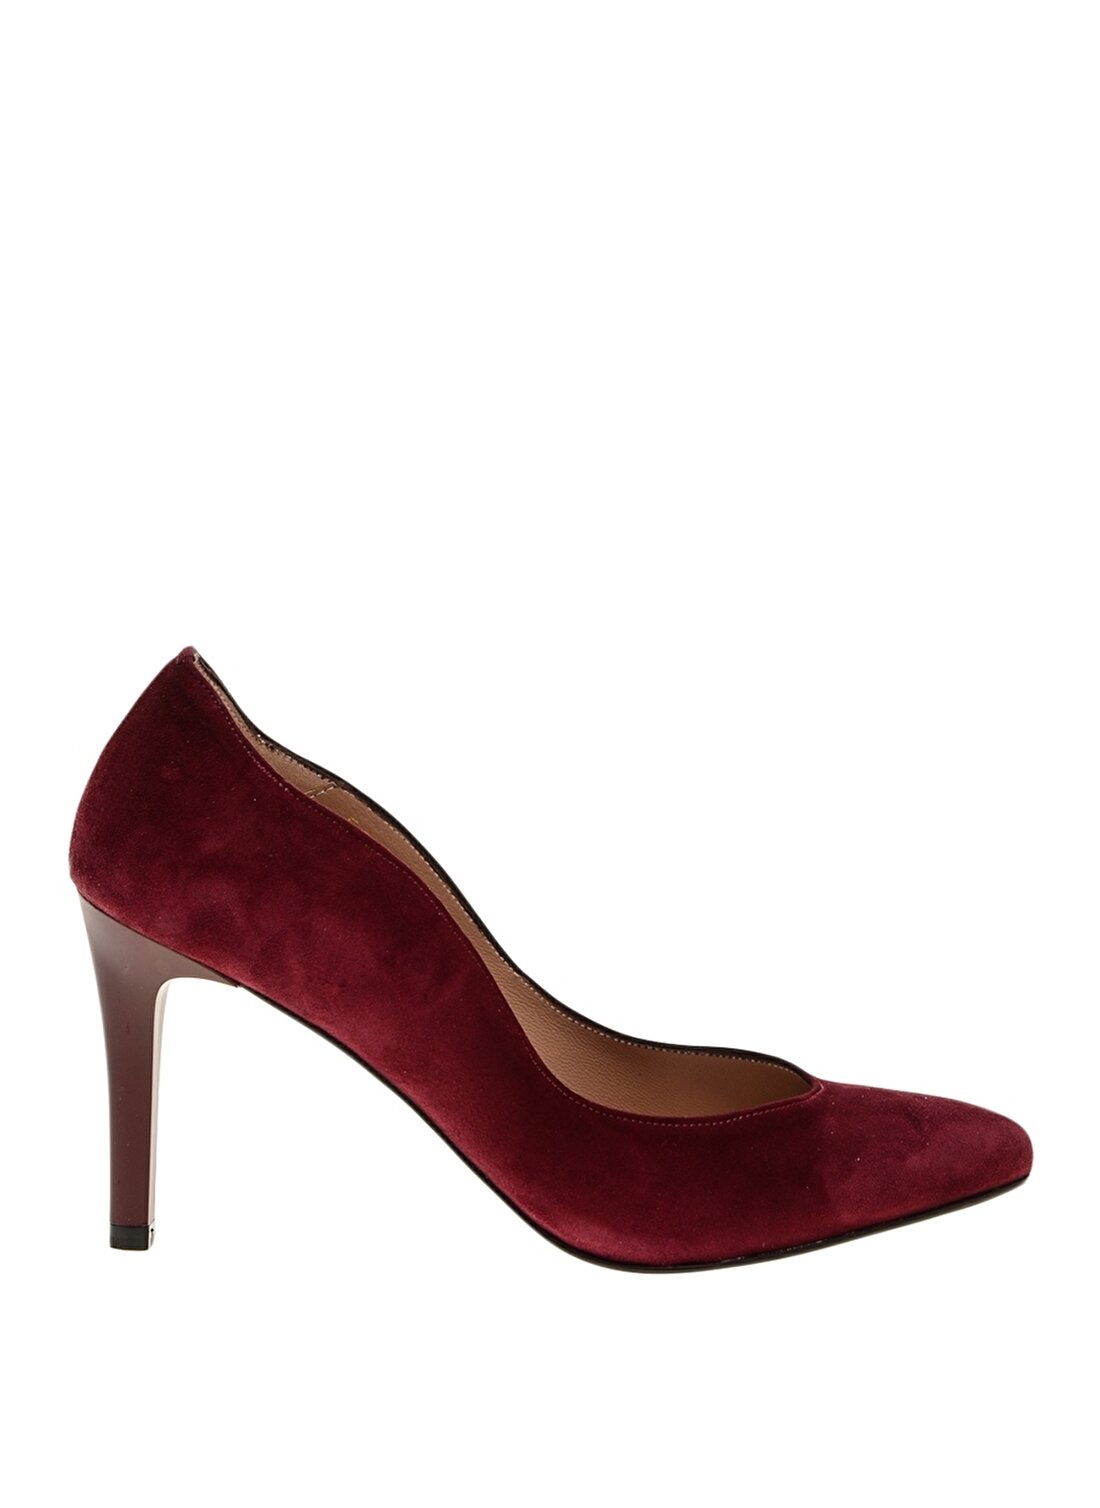 Divarese Klasik Süet Topuklu Kırmızı Kadın Ayakkabı